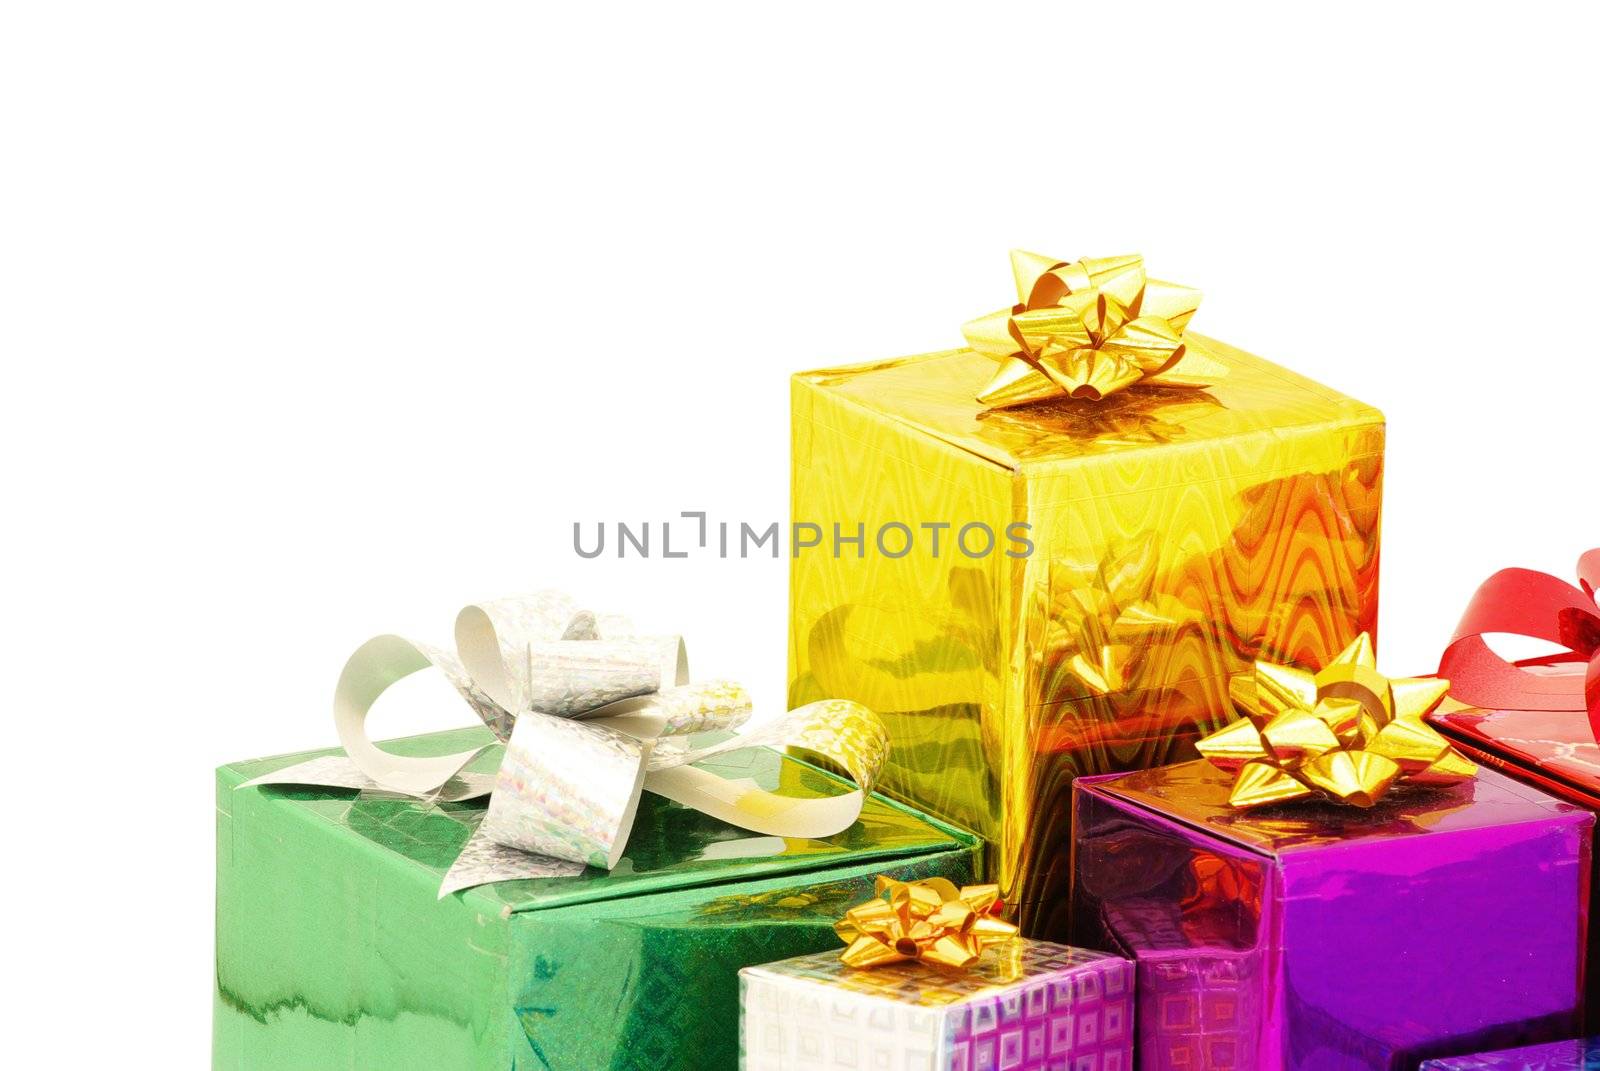  gifts by Pakhnyushchyy